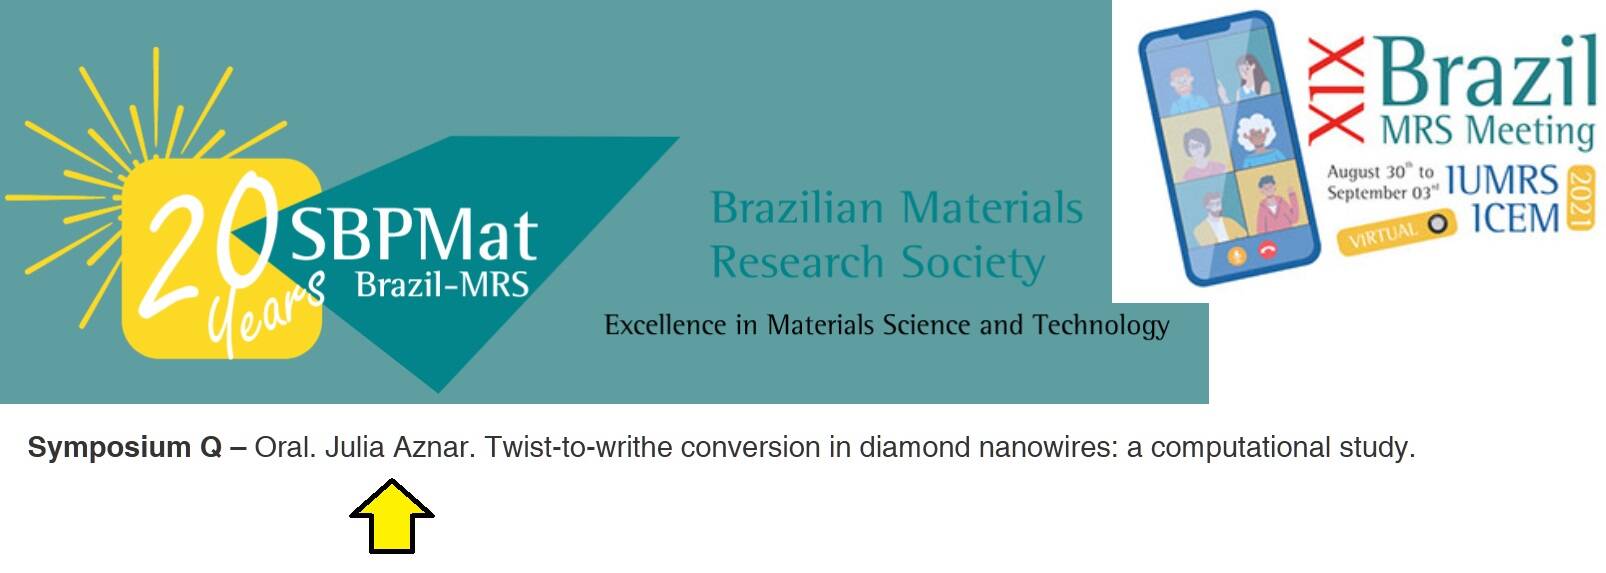 Aluna de graduação do IFGW é agraciada com o Bernhard Gross Award da Sociedade Brasileira de Pesquisa em Materiais